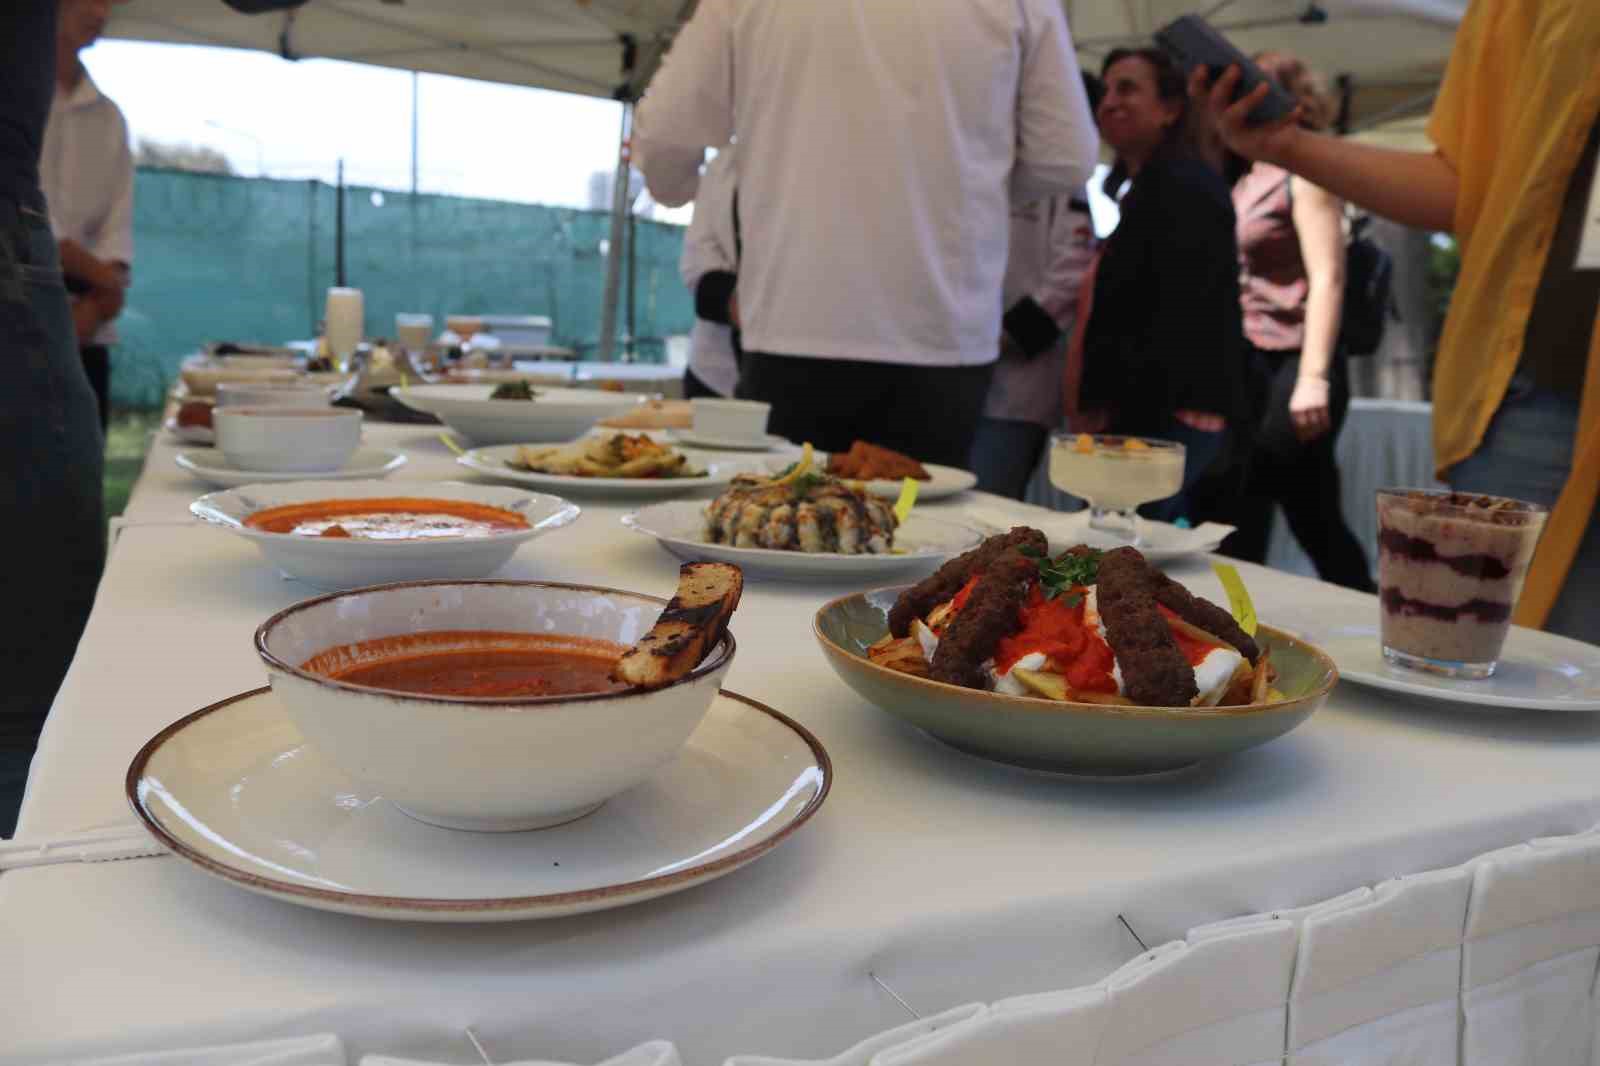 İzmir’de lise öğrencileri yemek yarışmasında hünerlerini sergiledi
